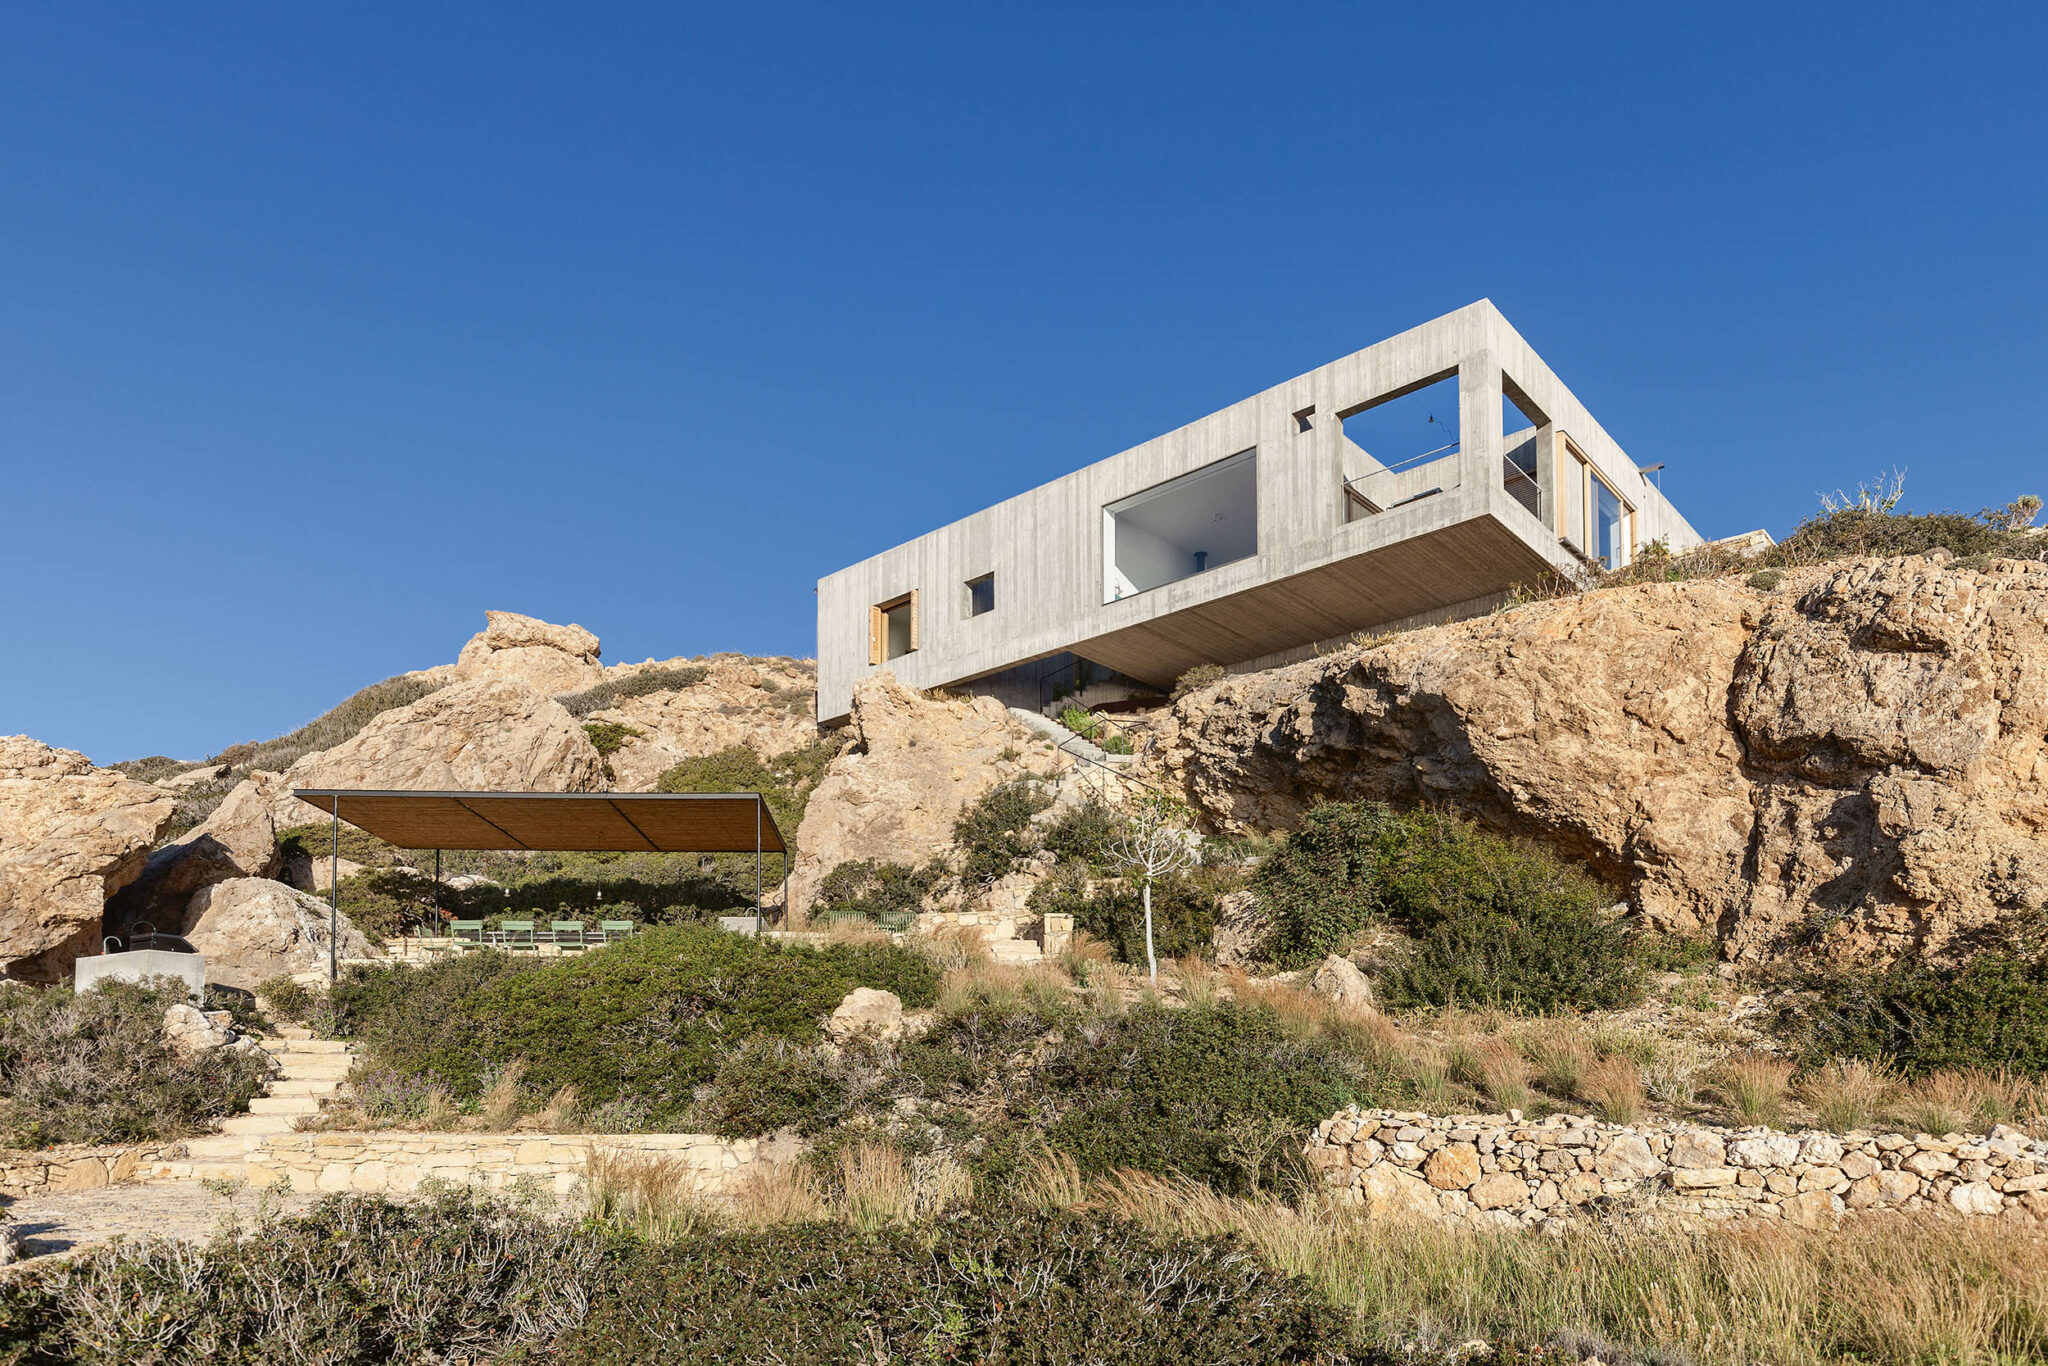 50 κορυφαίες ελληνικές κατοικίες -Μια συλλεκτική έκδοση την Κυριακή με το ΘΕΜΑ